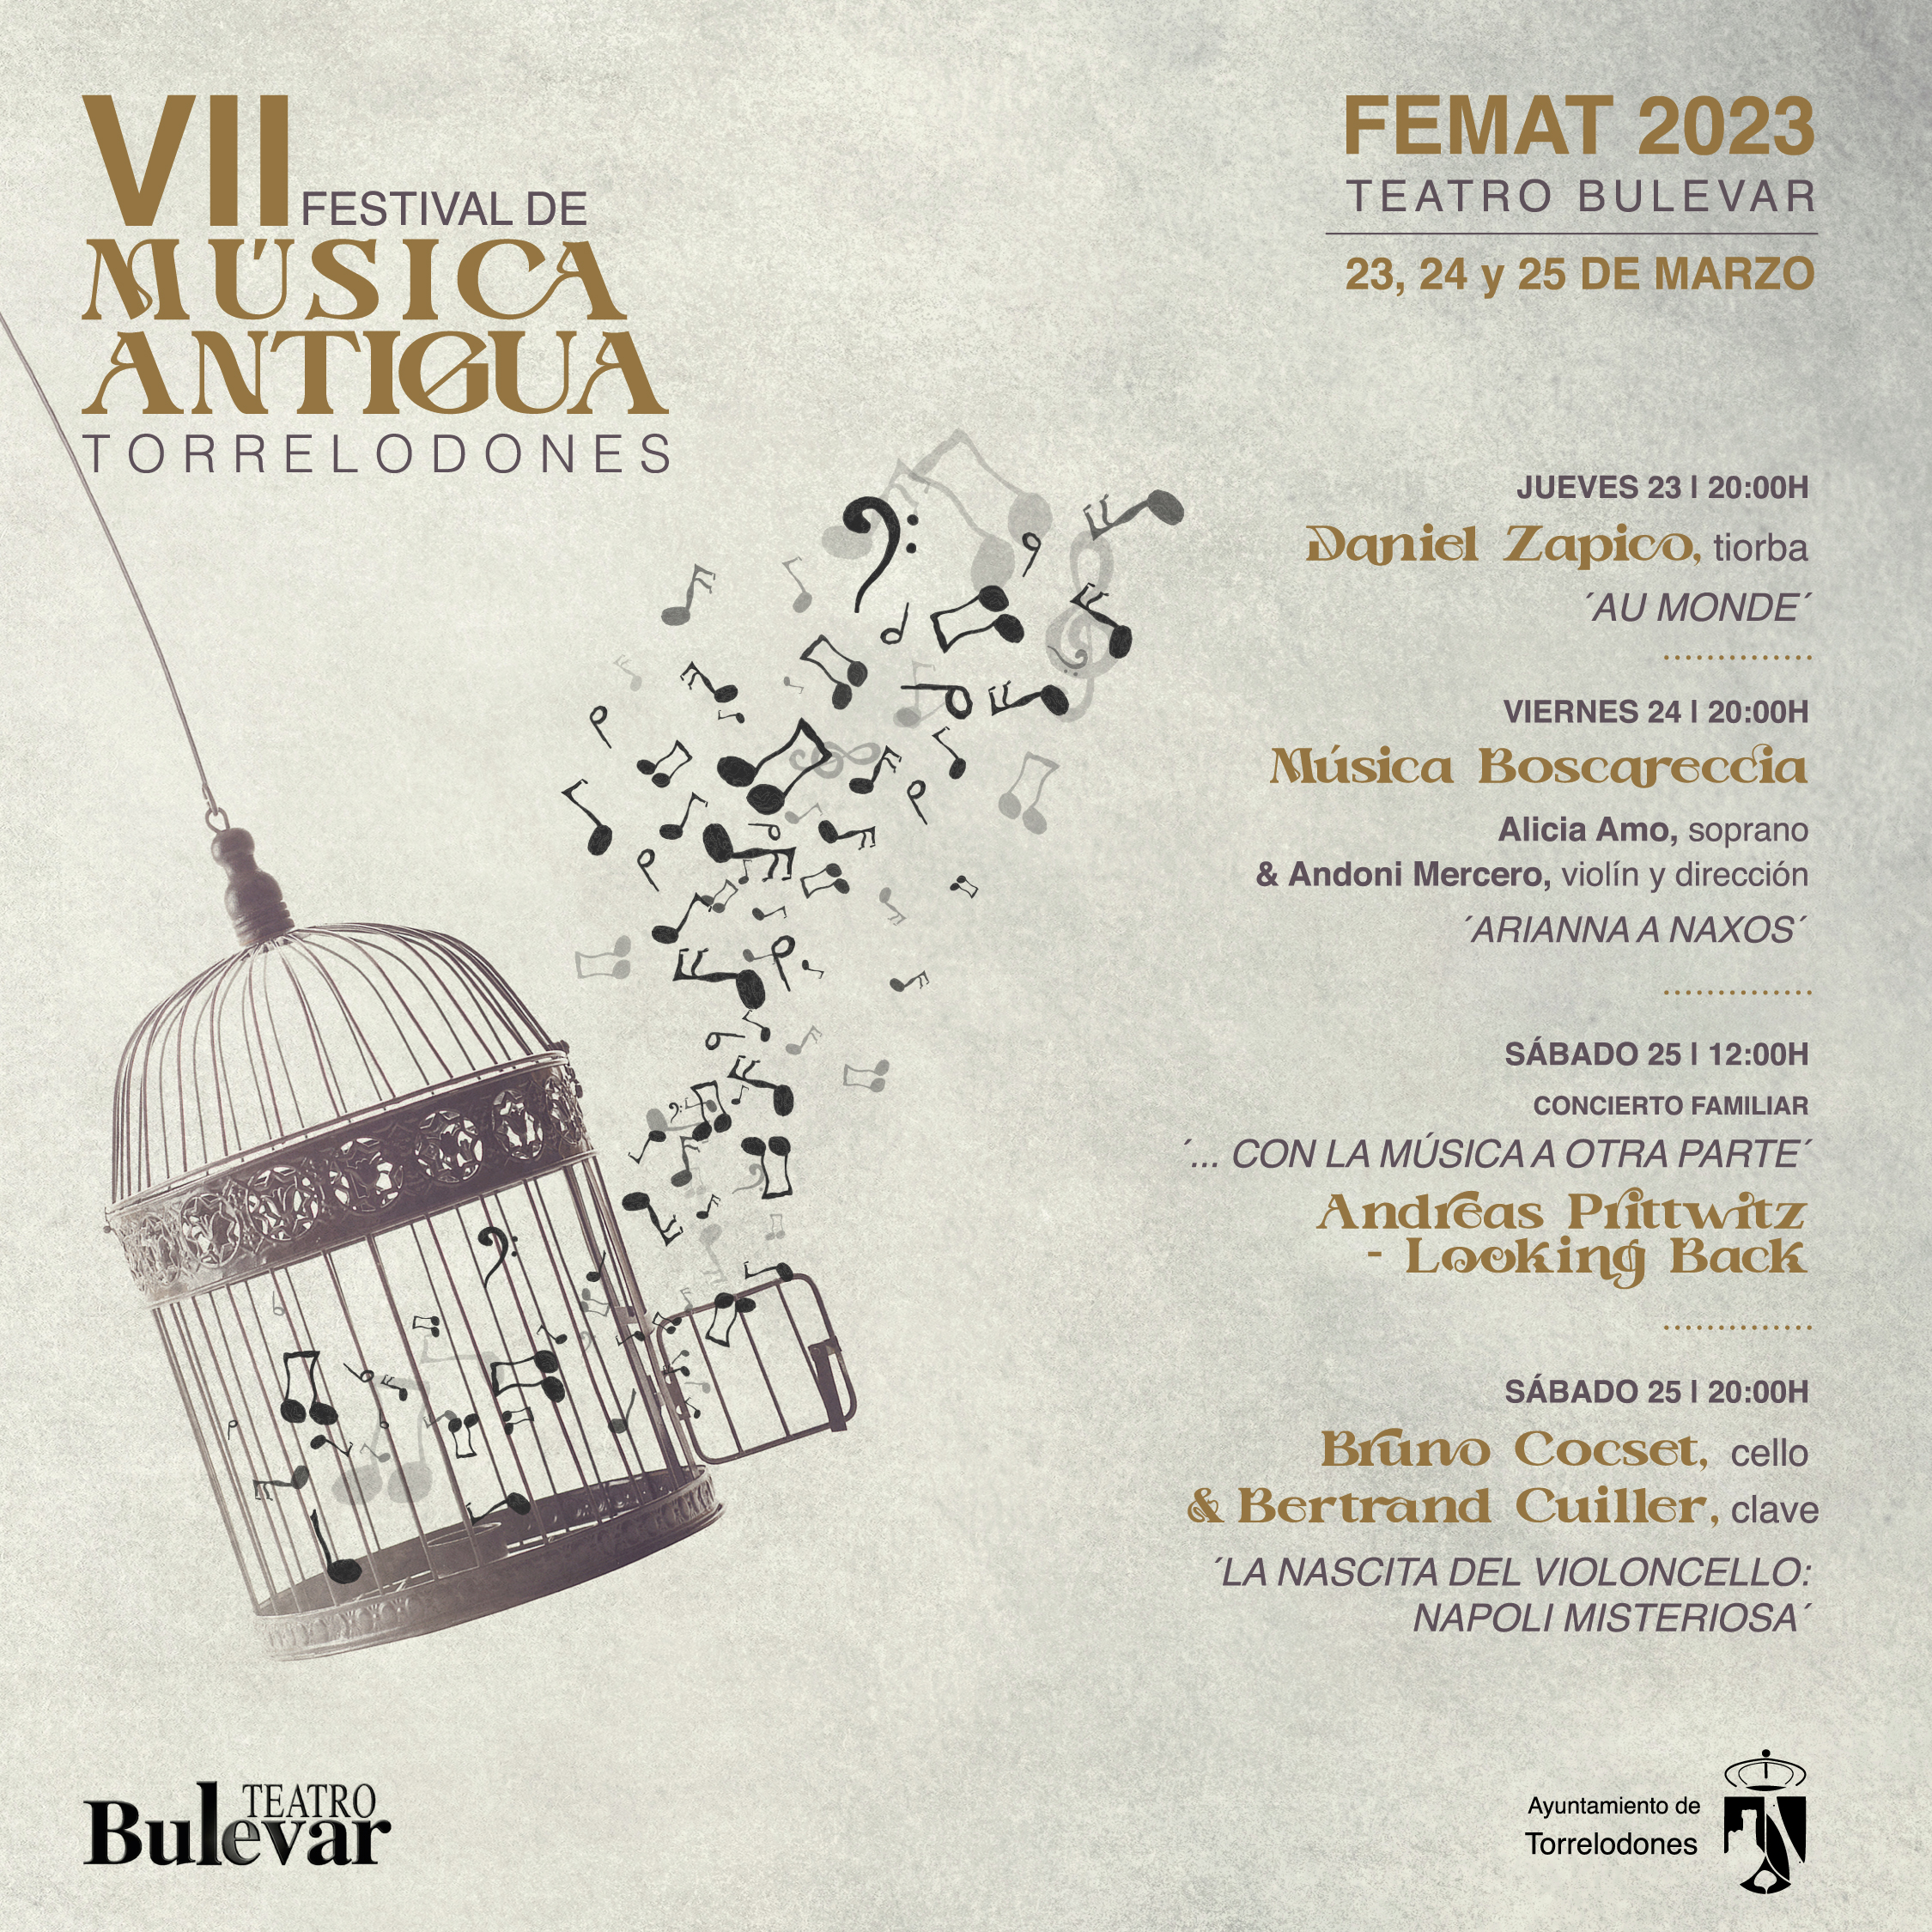 VII Festival de música antigua de Torrelodones FEMAT 2023